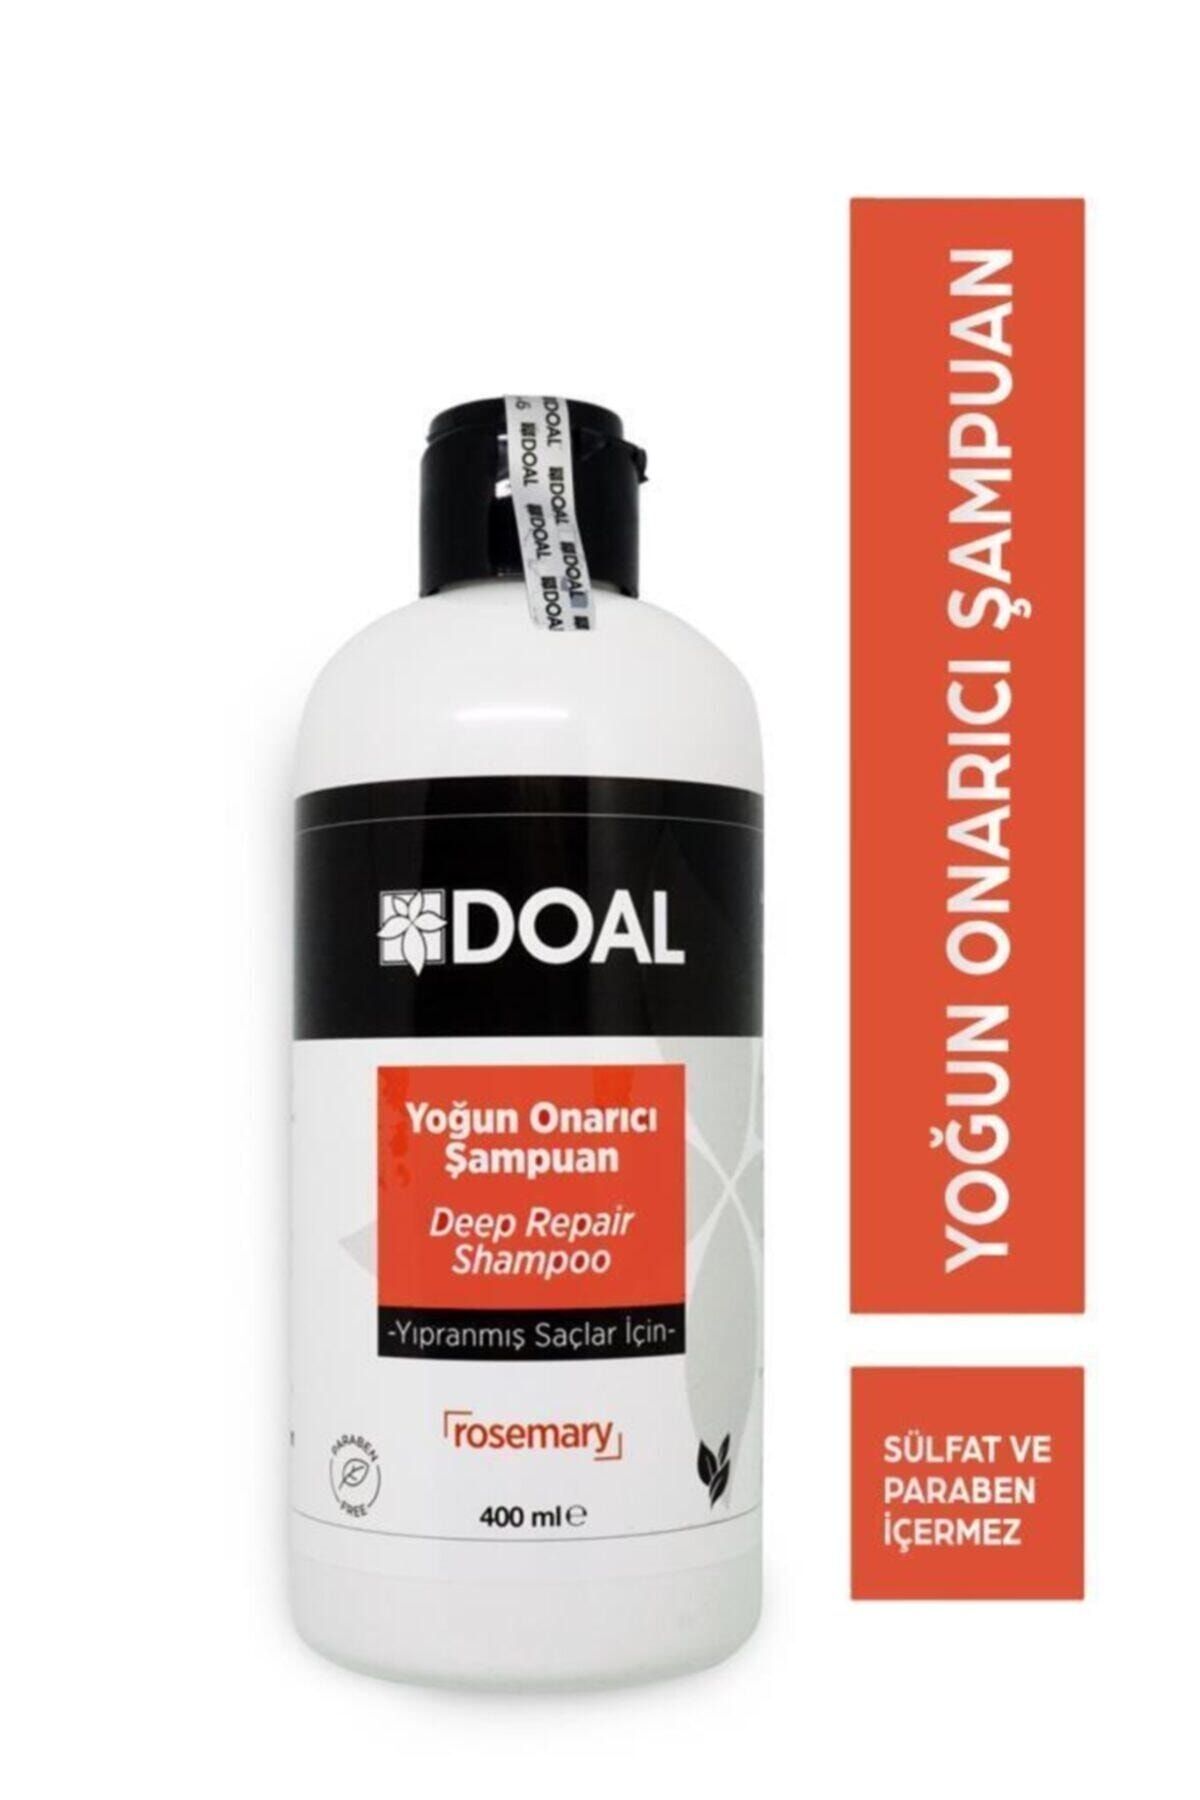 DOAL Biberiye Rosemary I?çerikli Dökülme Karşıtı Yıpranmış Saçlar Için Yoğun Onarıcı Şampuan 400 ml